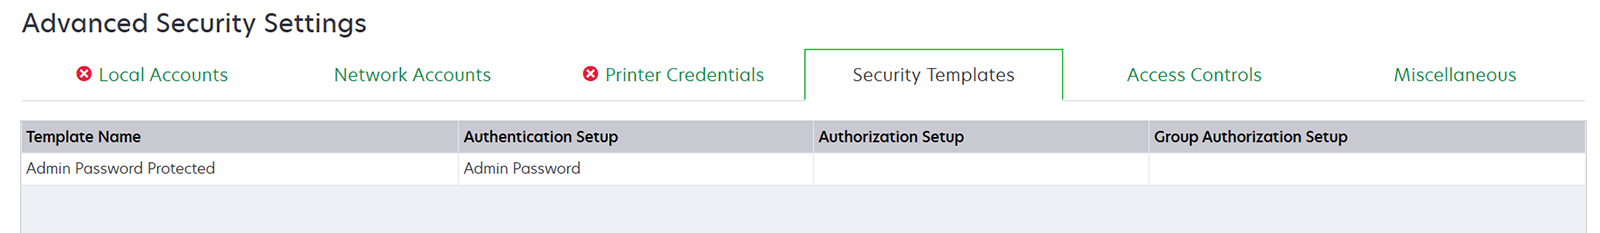 显示使用管理员密码本地帐户的安全模板的屏幕截图